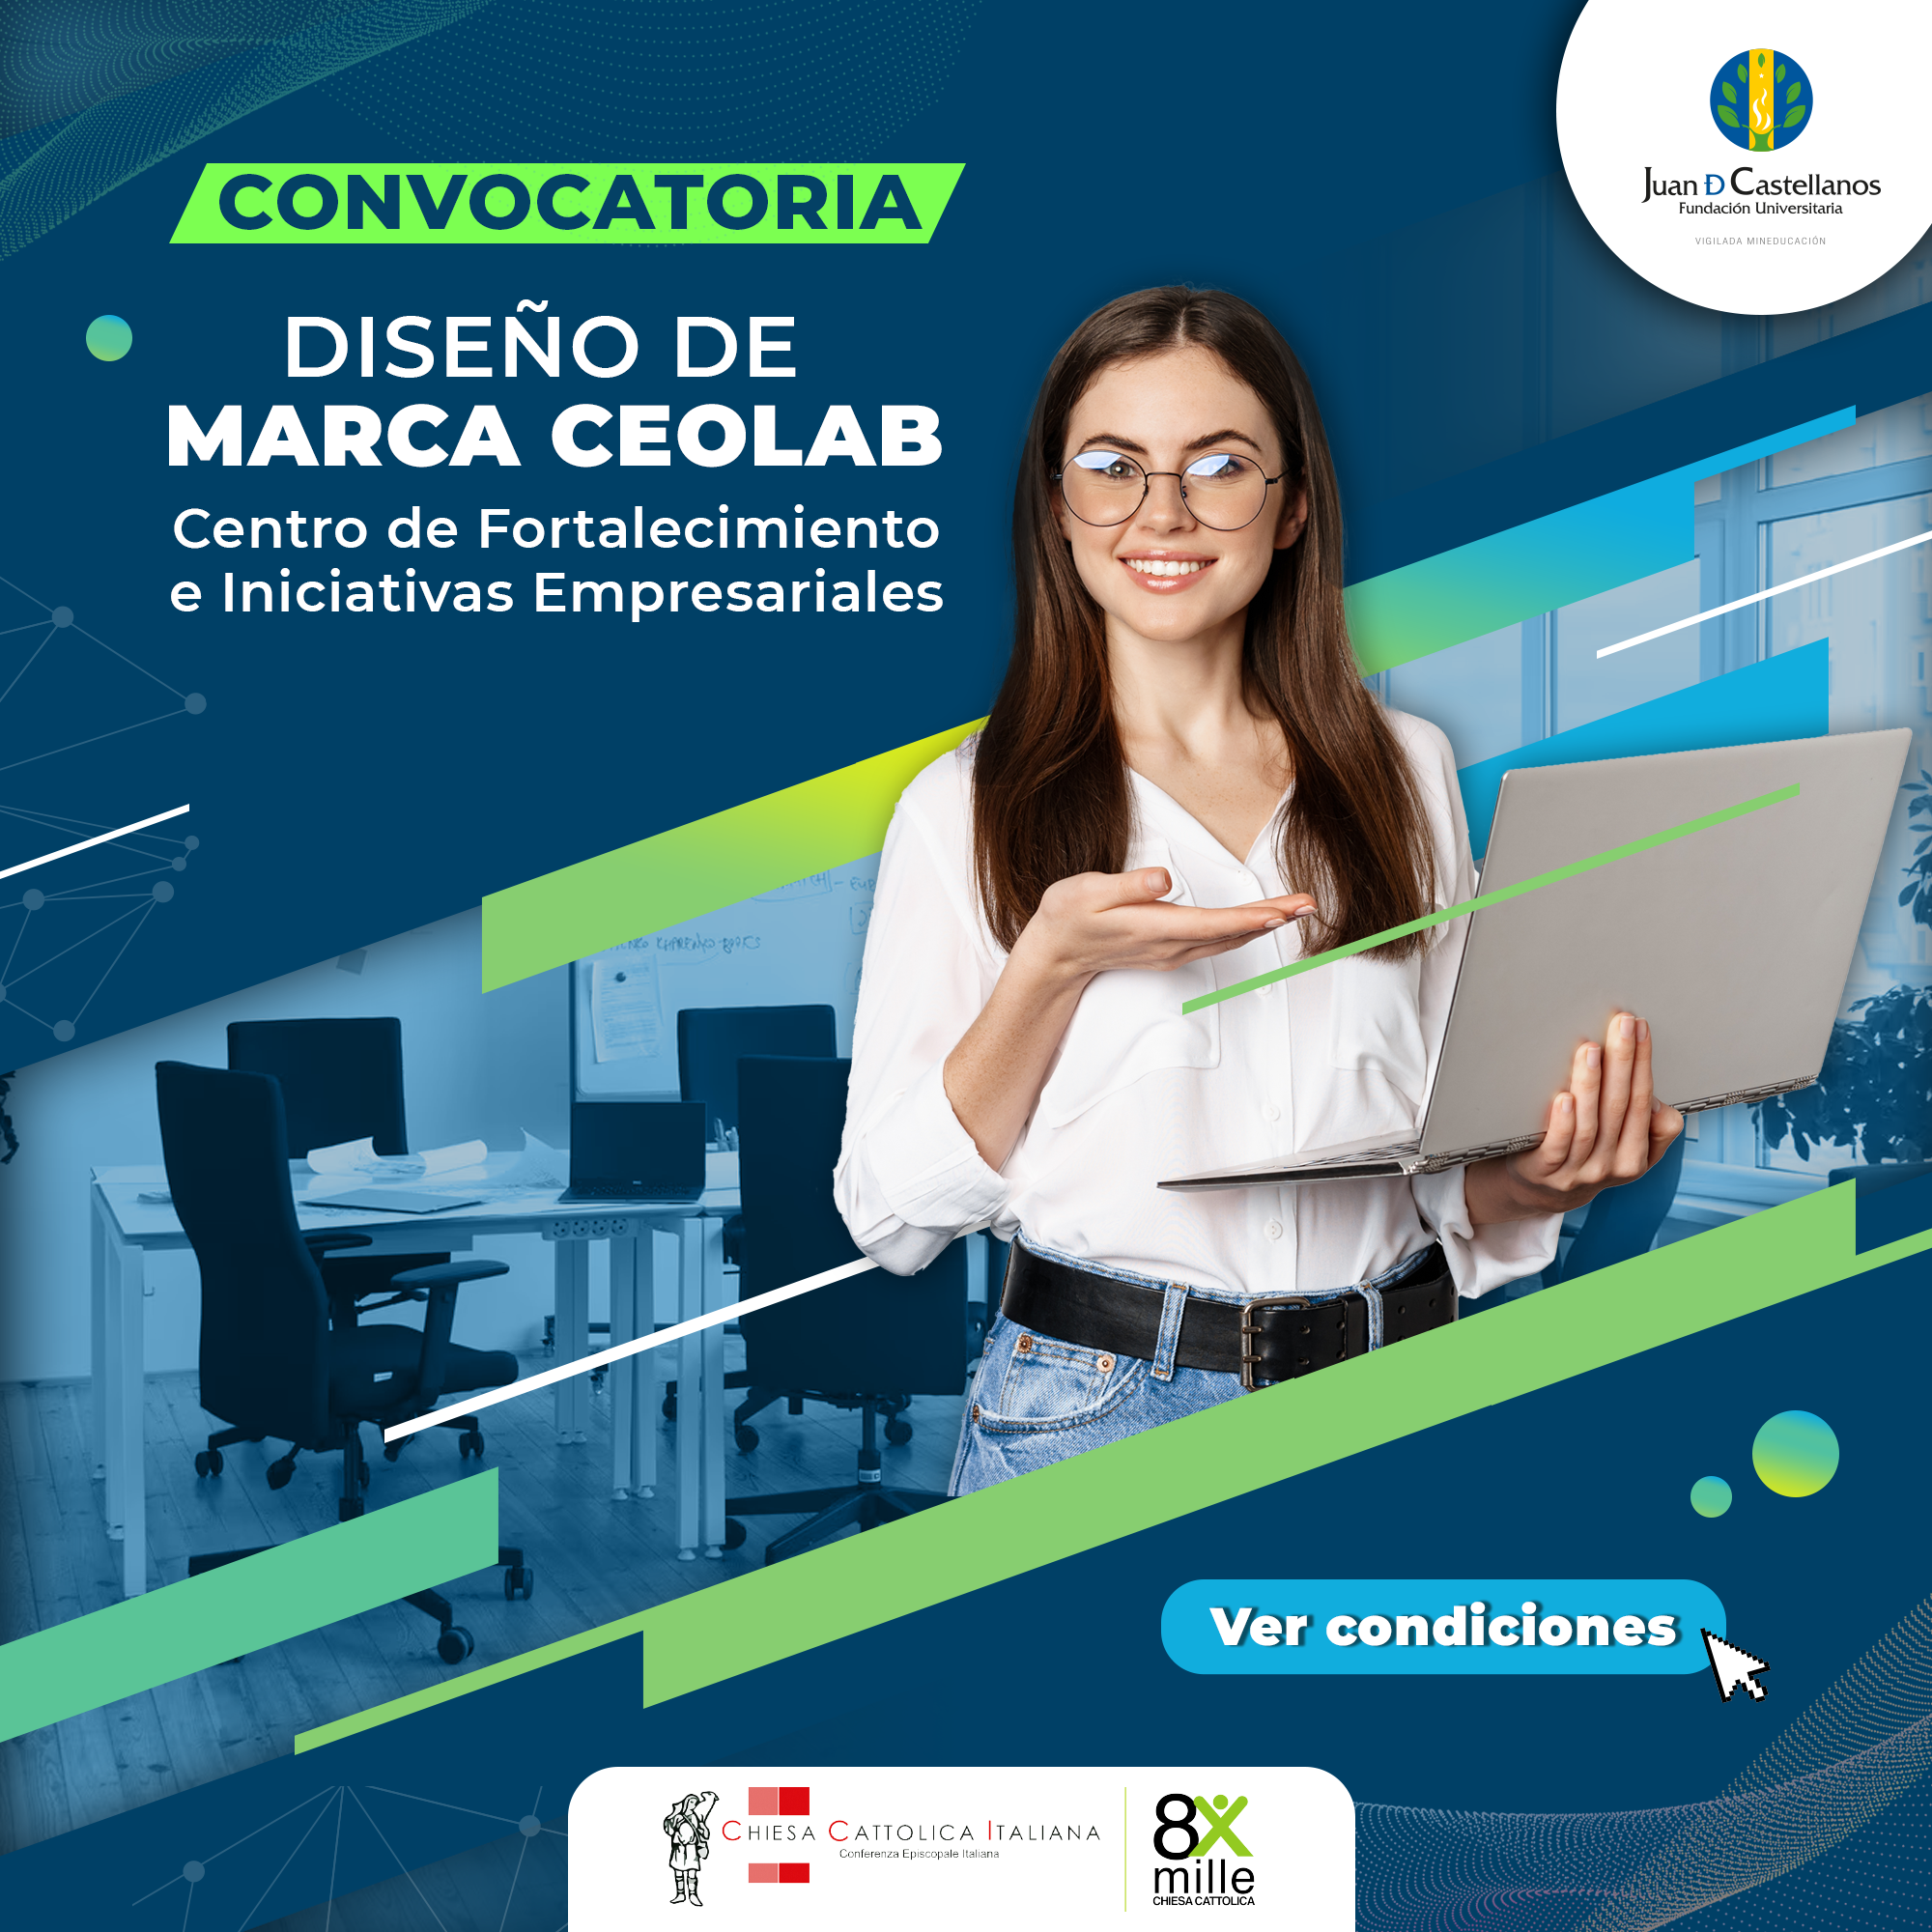 CONVOCATORIA DISEÑO DE MARCA CEOLAB - Centro de Fortalecimiento e Iniciativas Empresariales